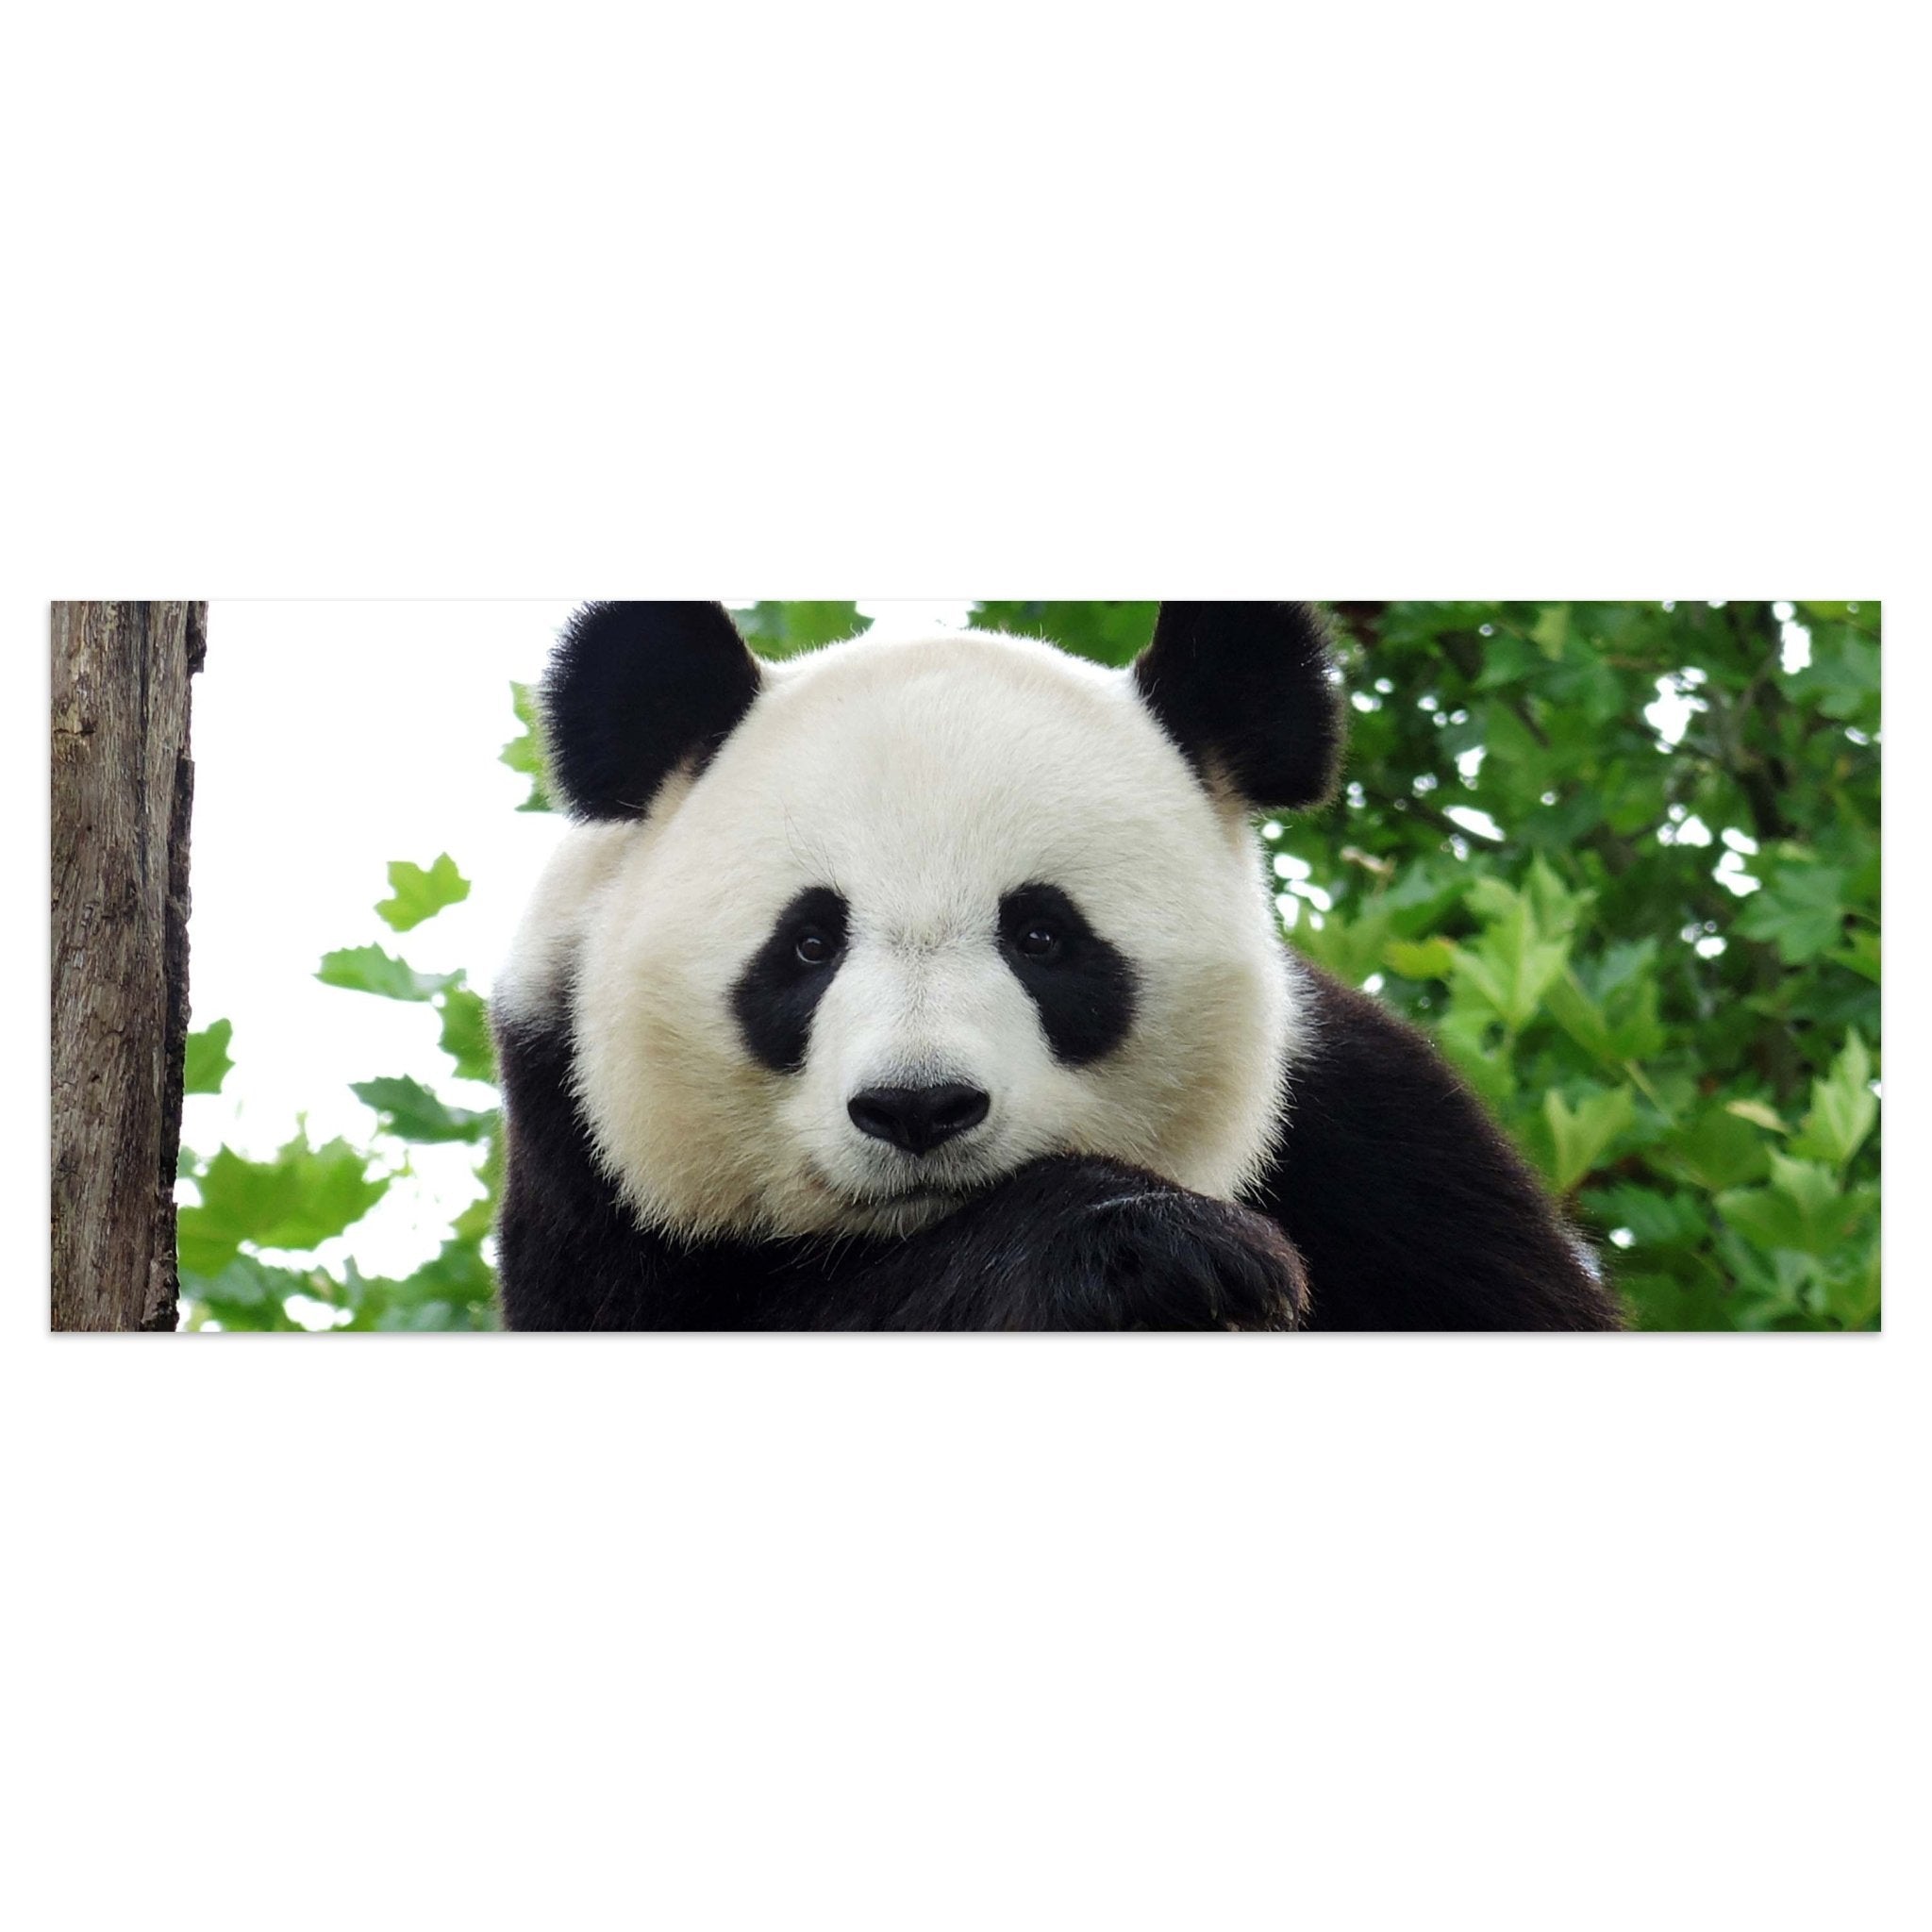 Leinwandbild Panda, Bär, Tier, schwarz, weiß M1111 kaufen - Bild 1